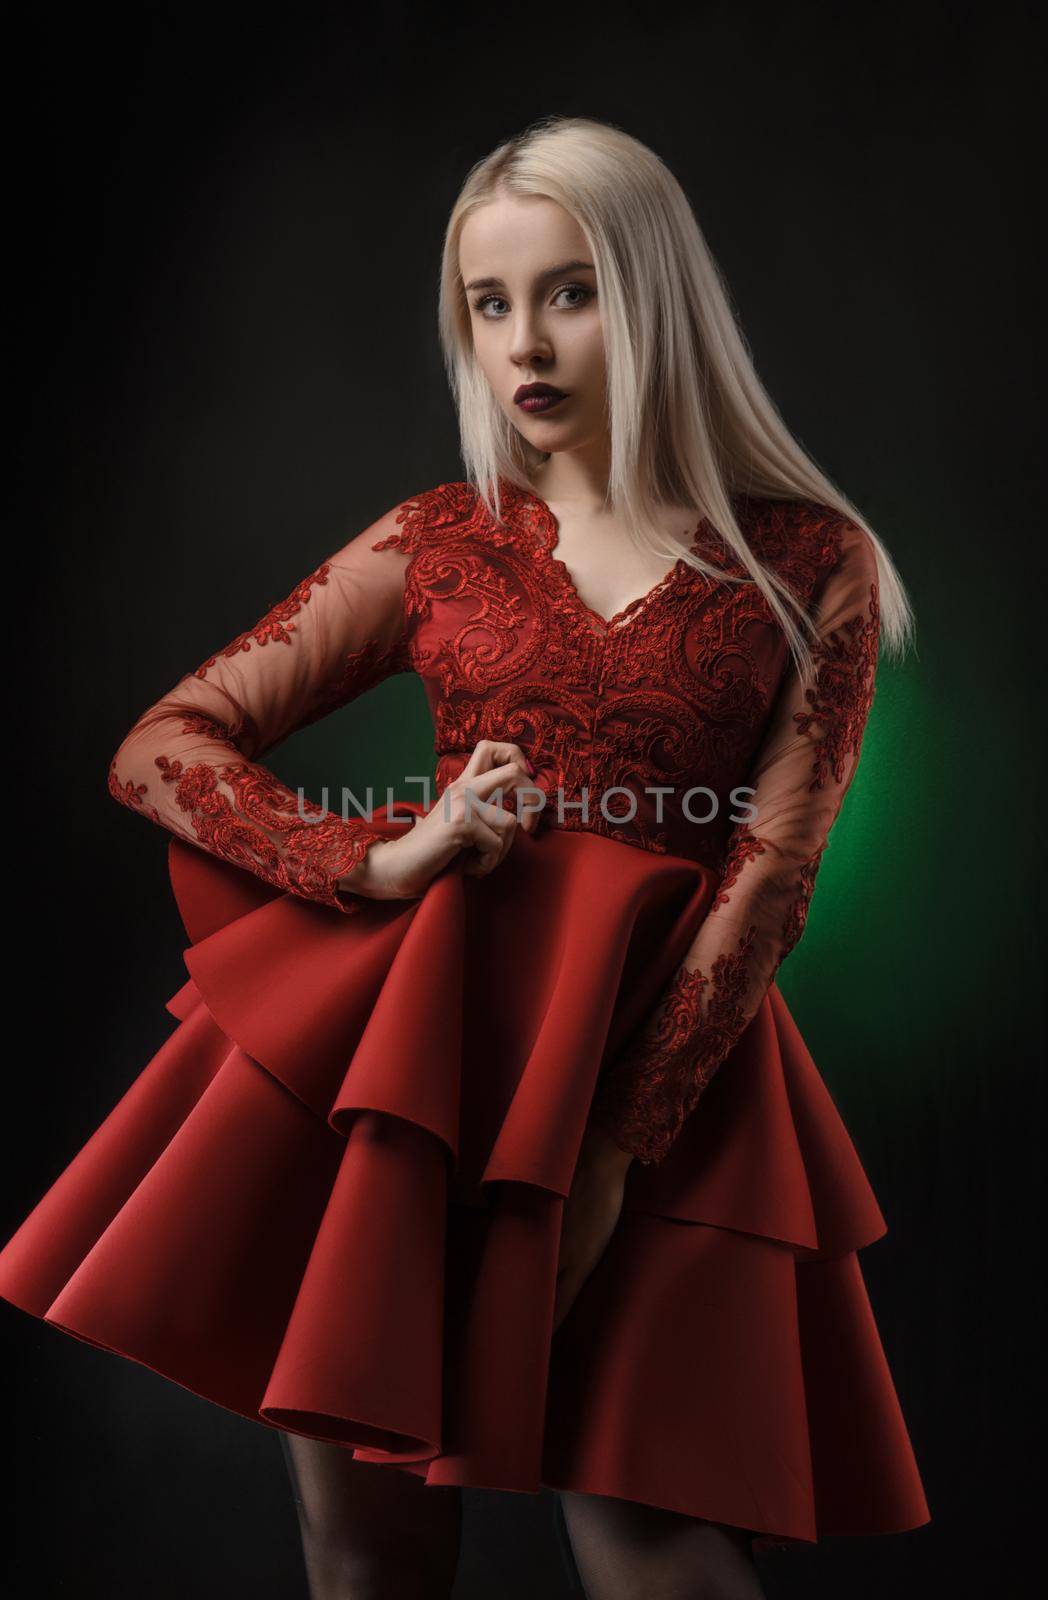 lovely girl in red dress posing on black background in Studio (blonde )